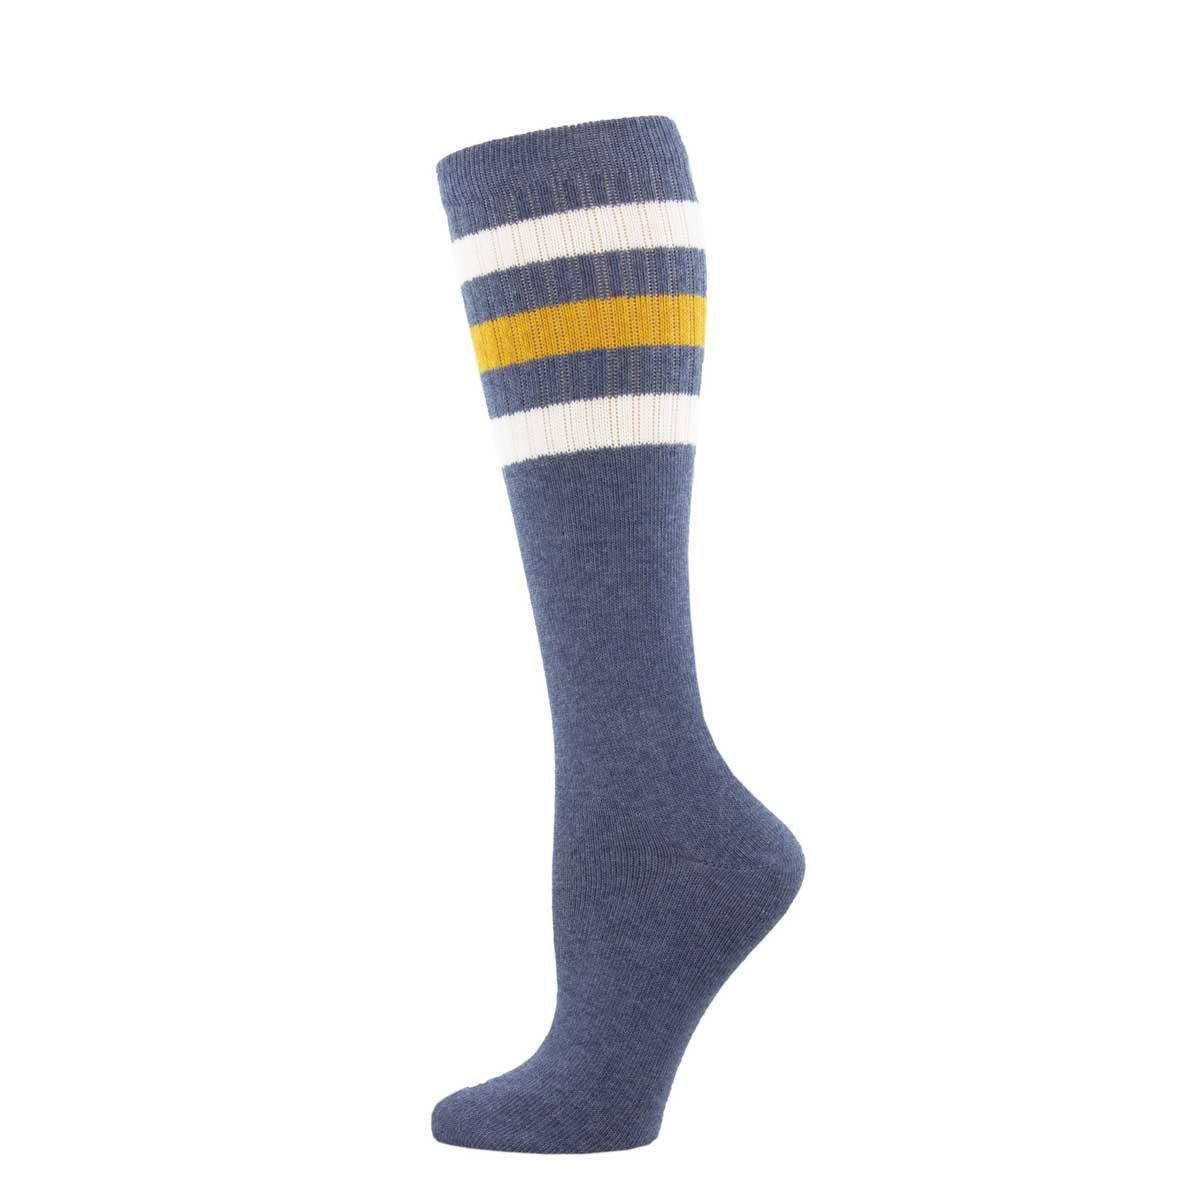 Socksmith - High Roller Denim Heather Stripe Knee High Socks | Women's - Knock Your Socks Off